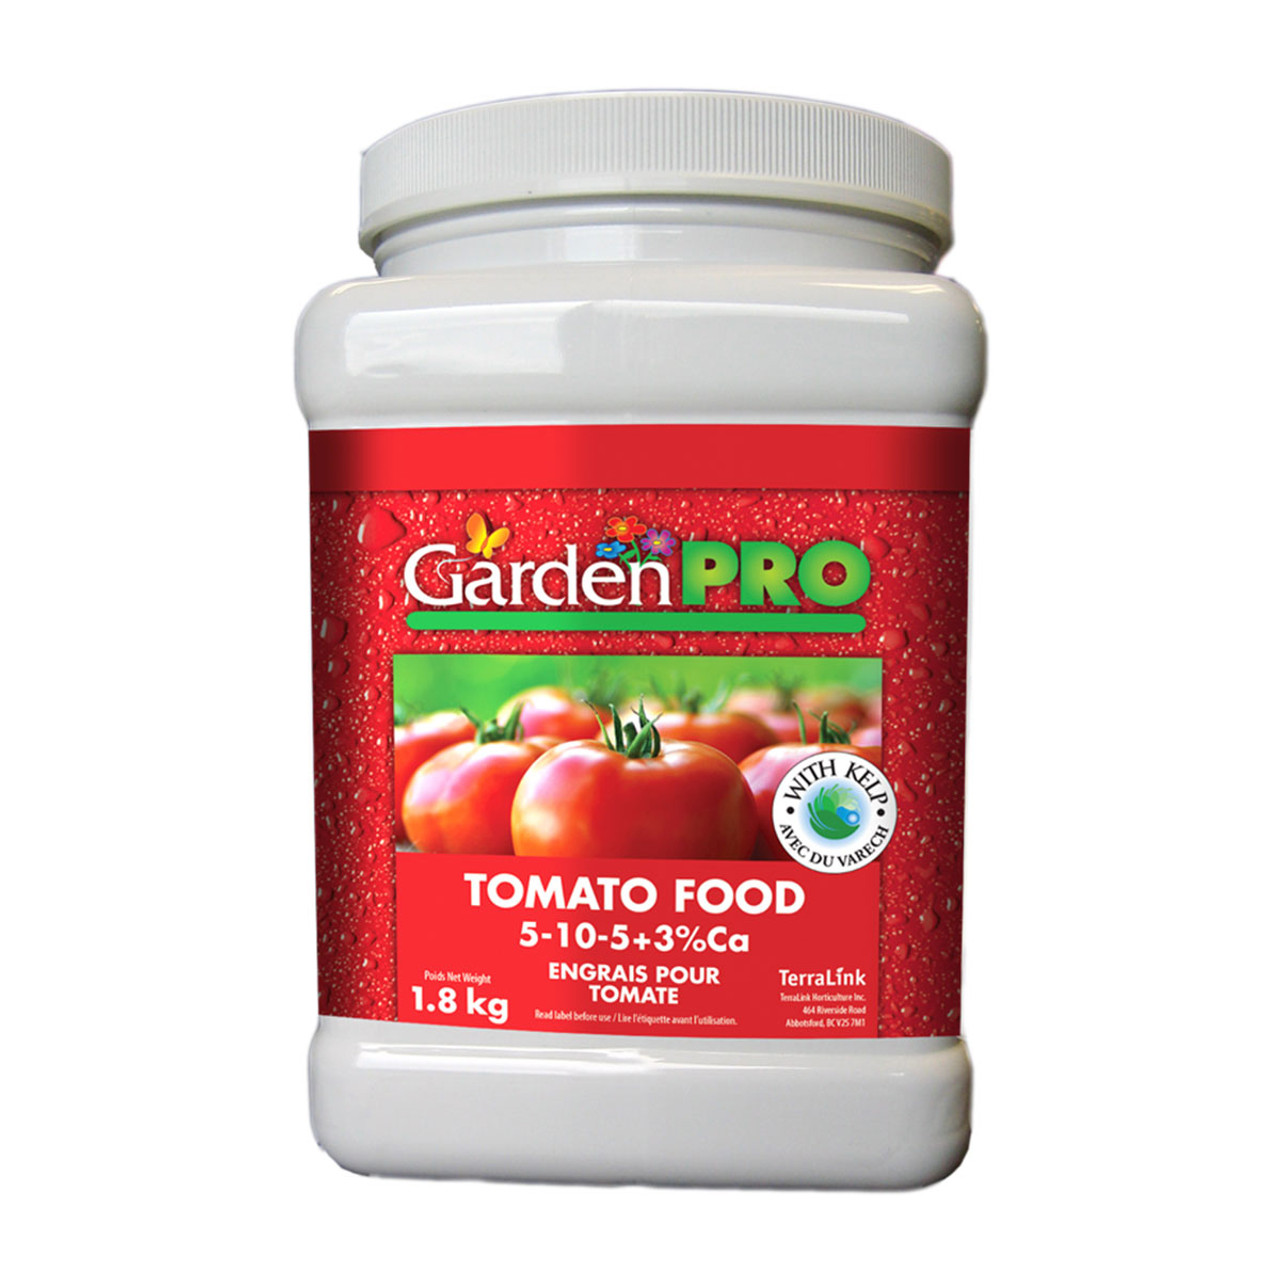 GardenPro Tomato Food 5-10-5 1.8Kg